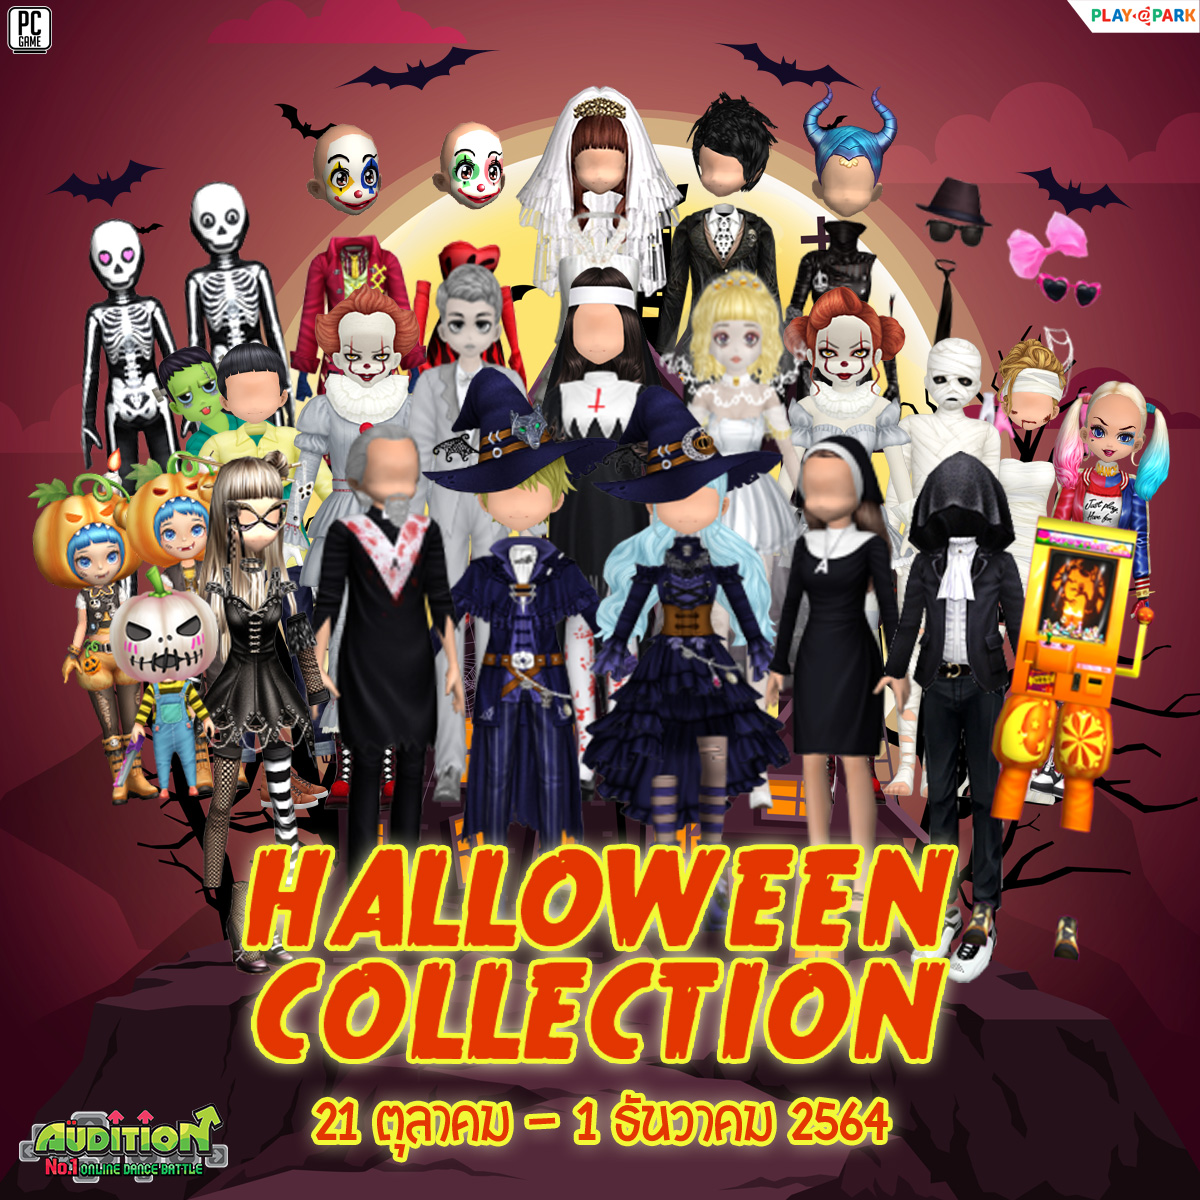 21 ตุลาคมนี้ Update เพลงใหม่, Squid Game item, Halloween Collection และไอเทมใหม่ !!  